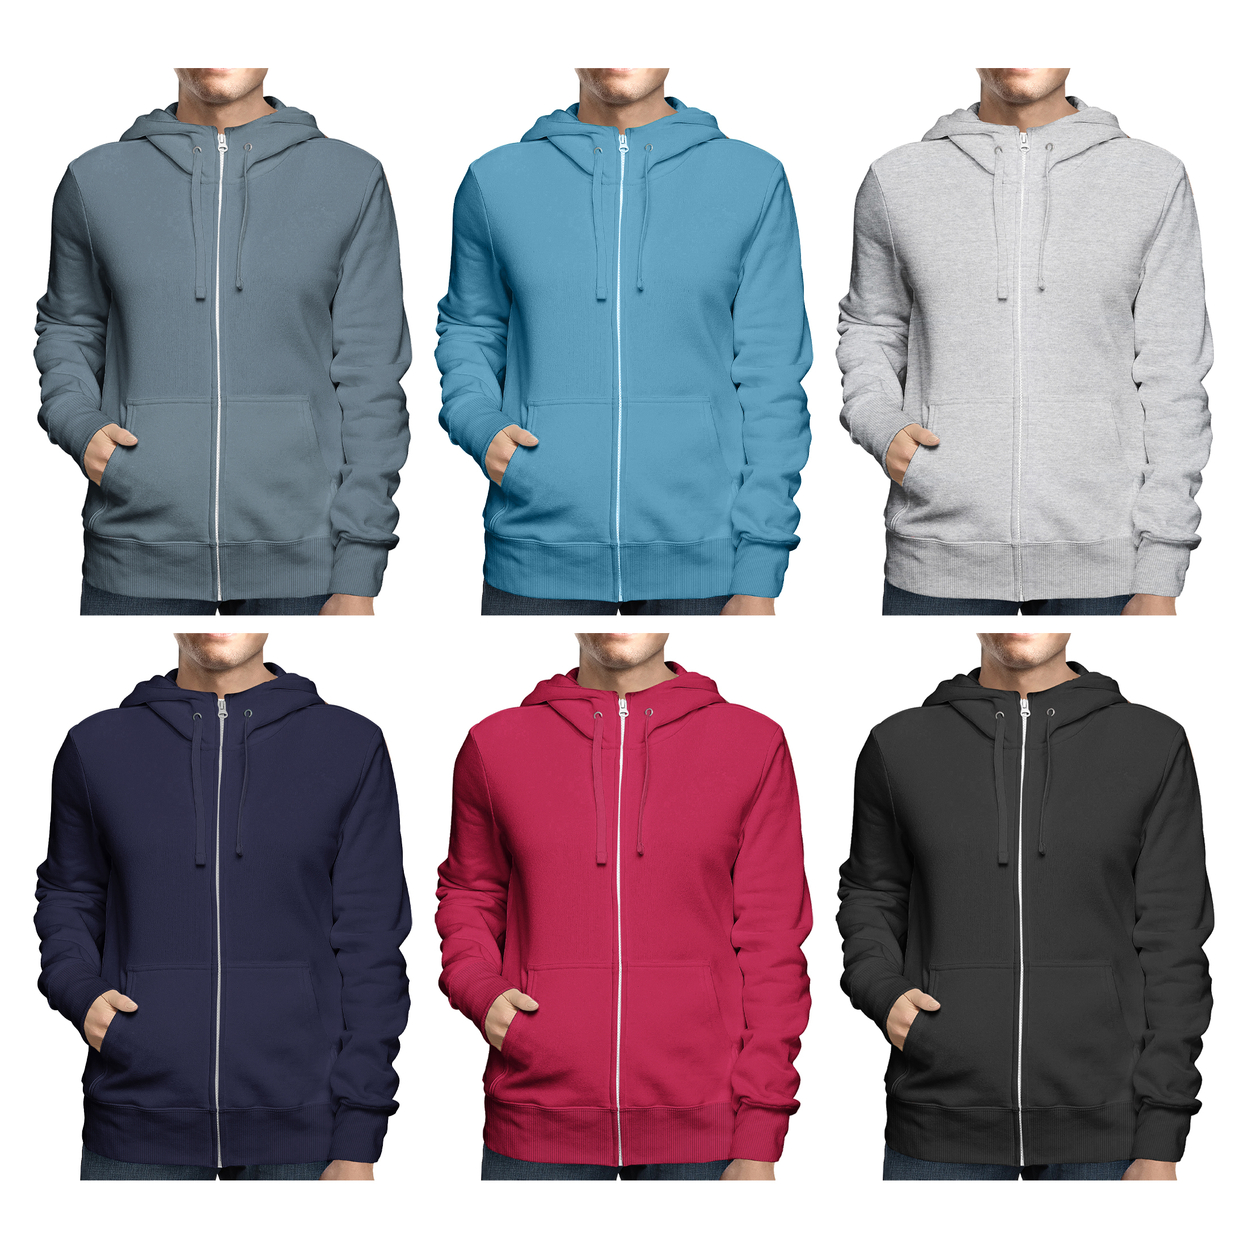 Men's Winter Warm Cozy Full Zip-Up Fleece Lined Soft Hoodie Sweatshirt - Charcoal, Xx-large